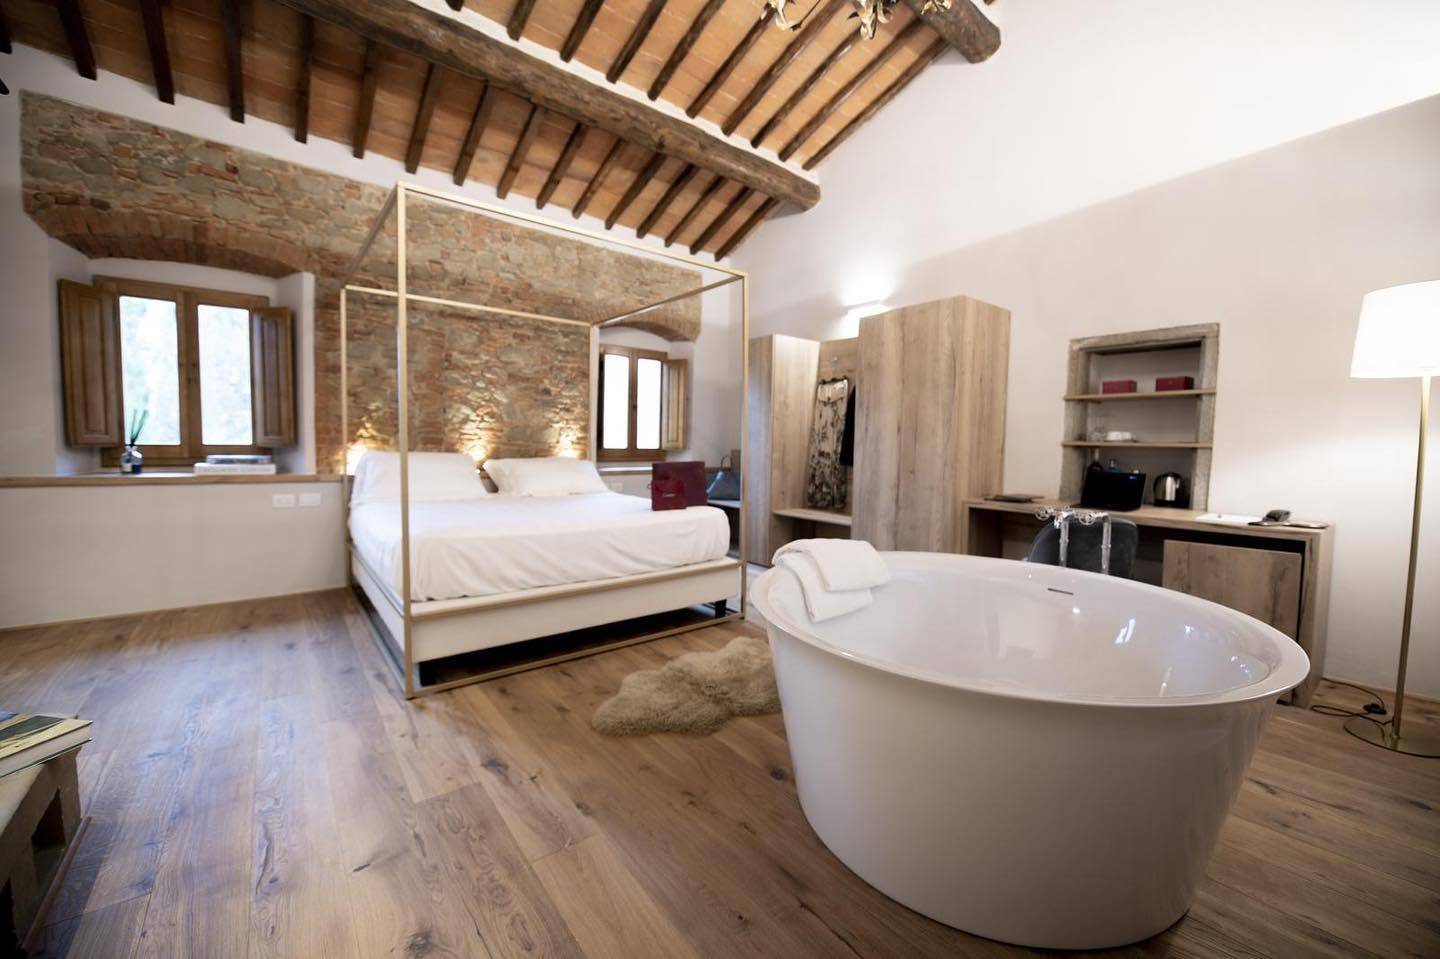 Qui potrai sentirti coccolato ed immergerti nel meraviglioso relax che ti offre Villa Barberino.
.
.
.
.
.
.
.
.